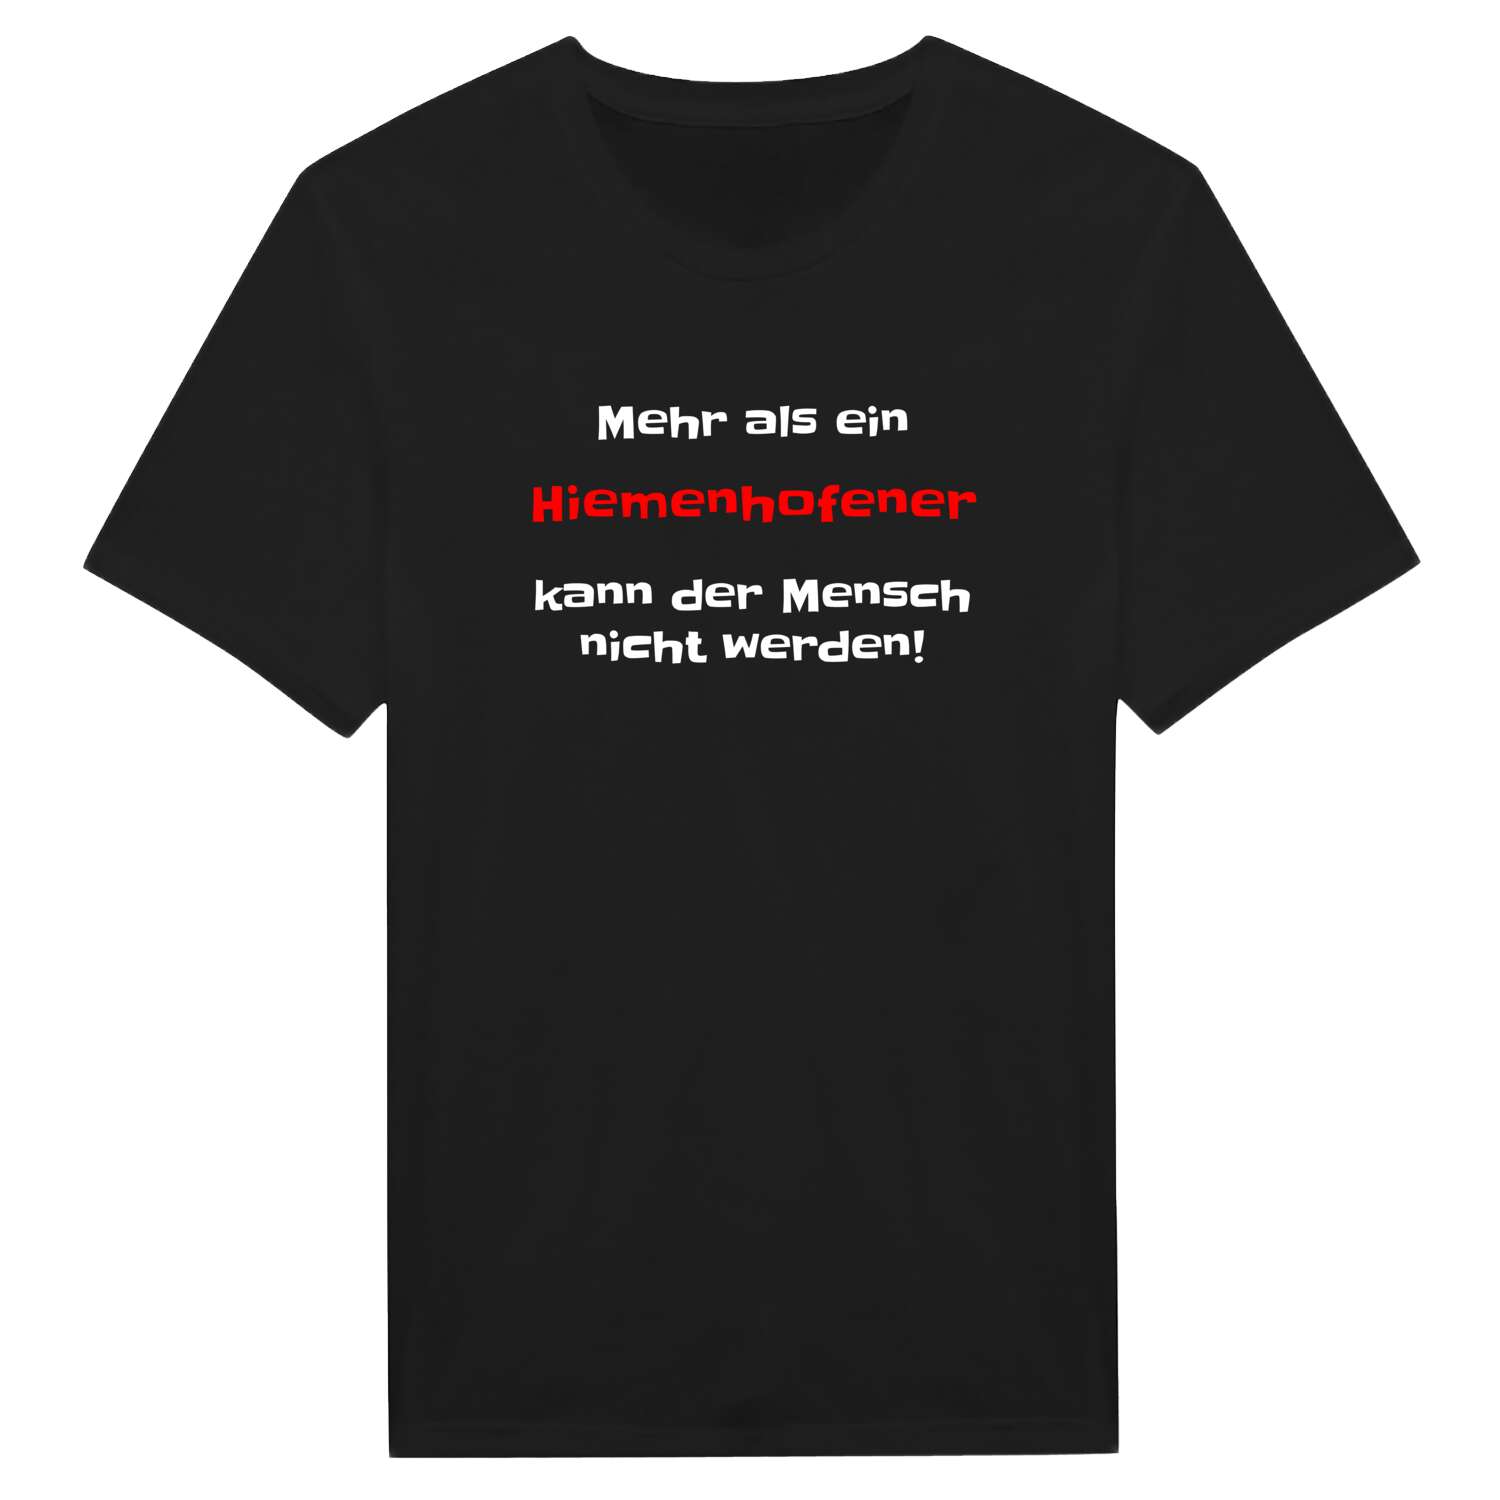 Hiemenhofen T-Shirt »Mehr als ein«